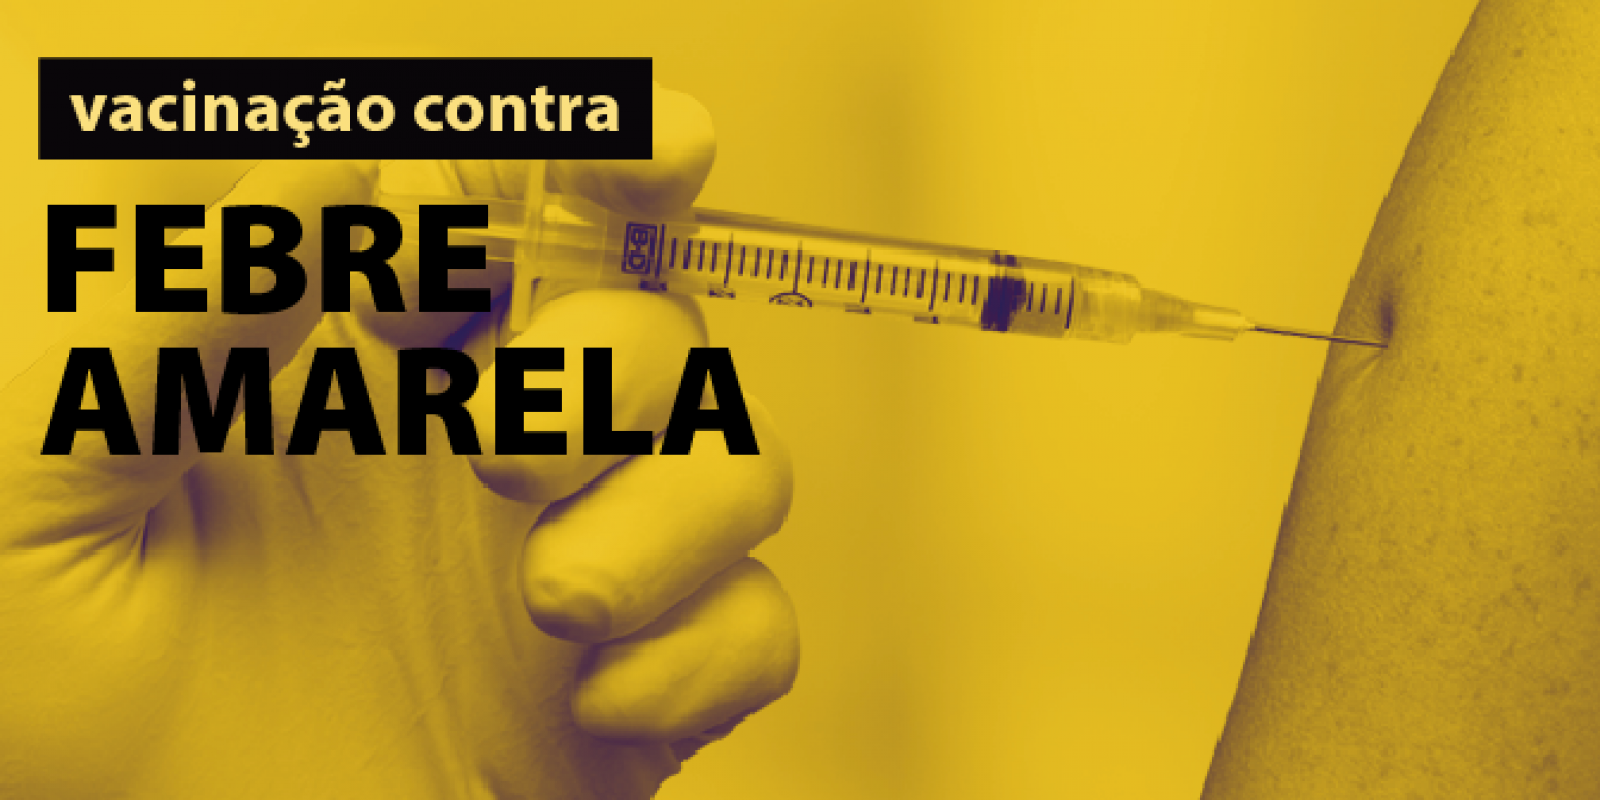 Aumenta a procura pela vacina contra febre amarela